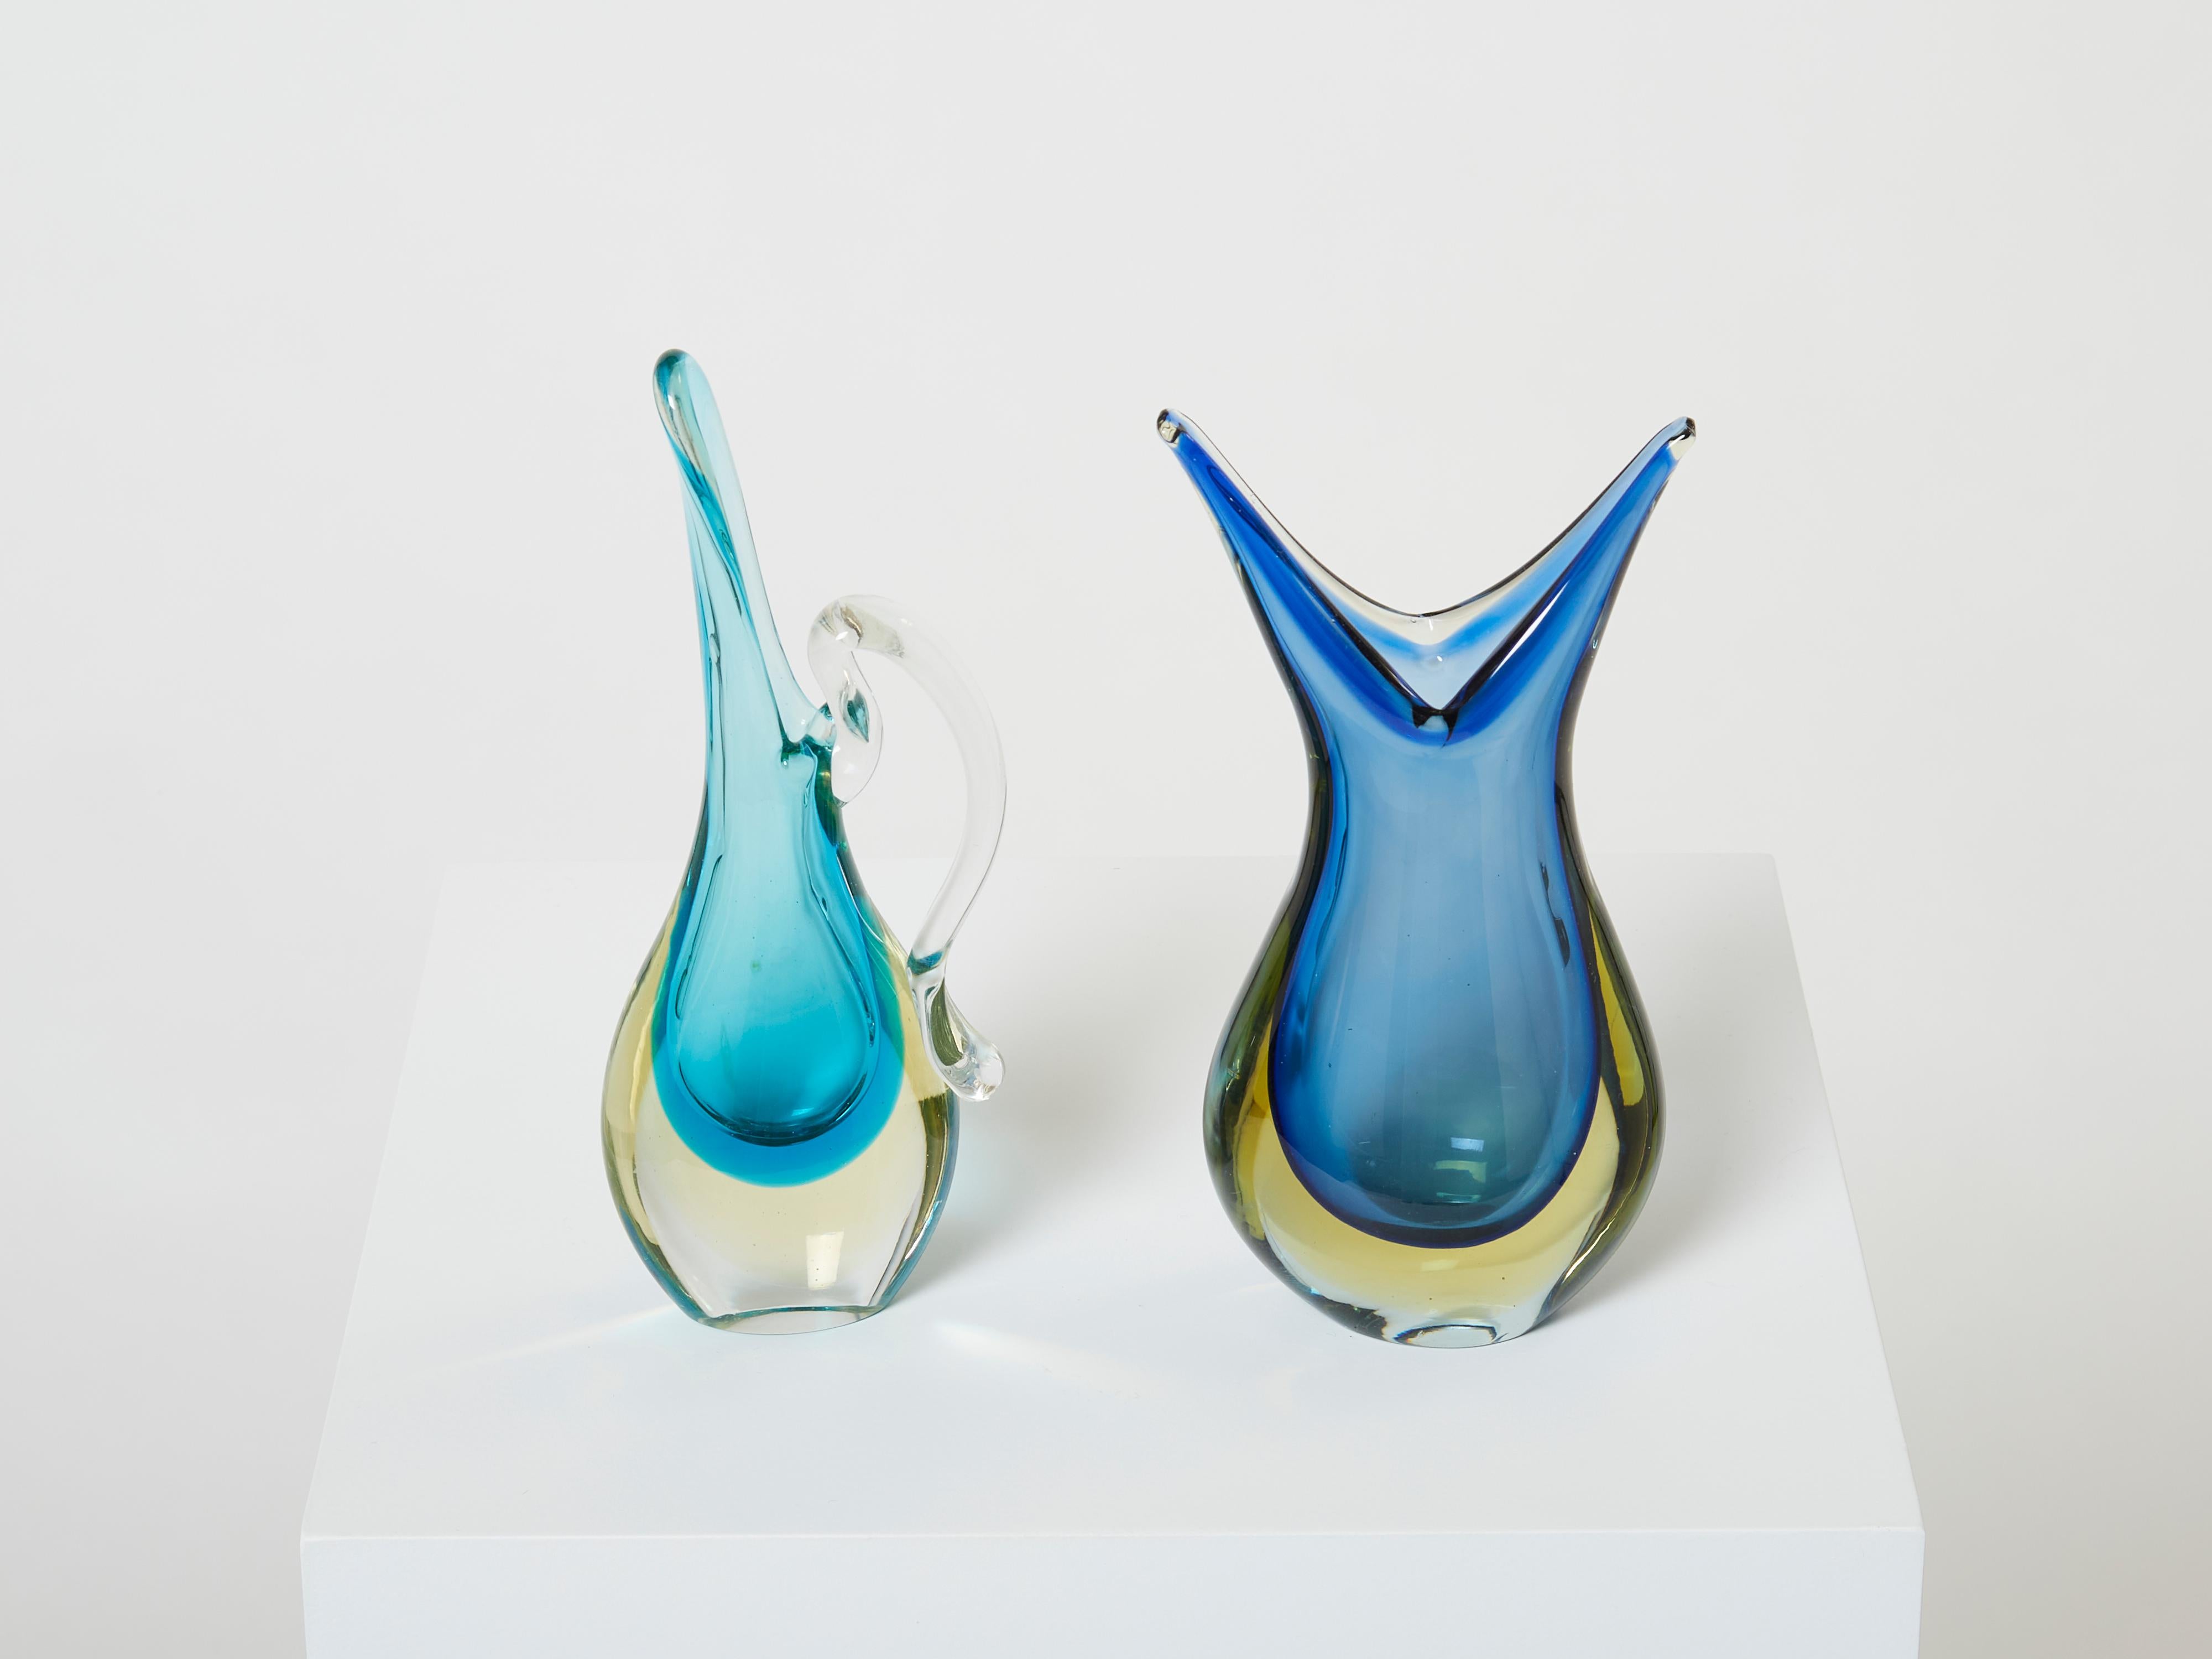 Magnifique ensemble de deux vases en verre de Murano de Sommerso réalisés dans les années 1970. Ces deux petits vases ont de jolies couleurs douces, avec du verre bleu immergé dans du verre jaune clair, terminé par du verre transparent. Les deux se